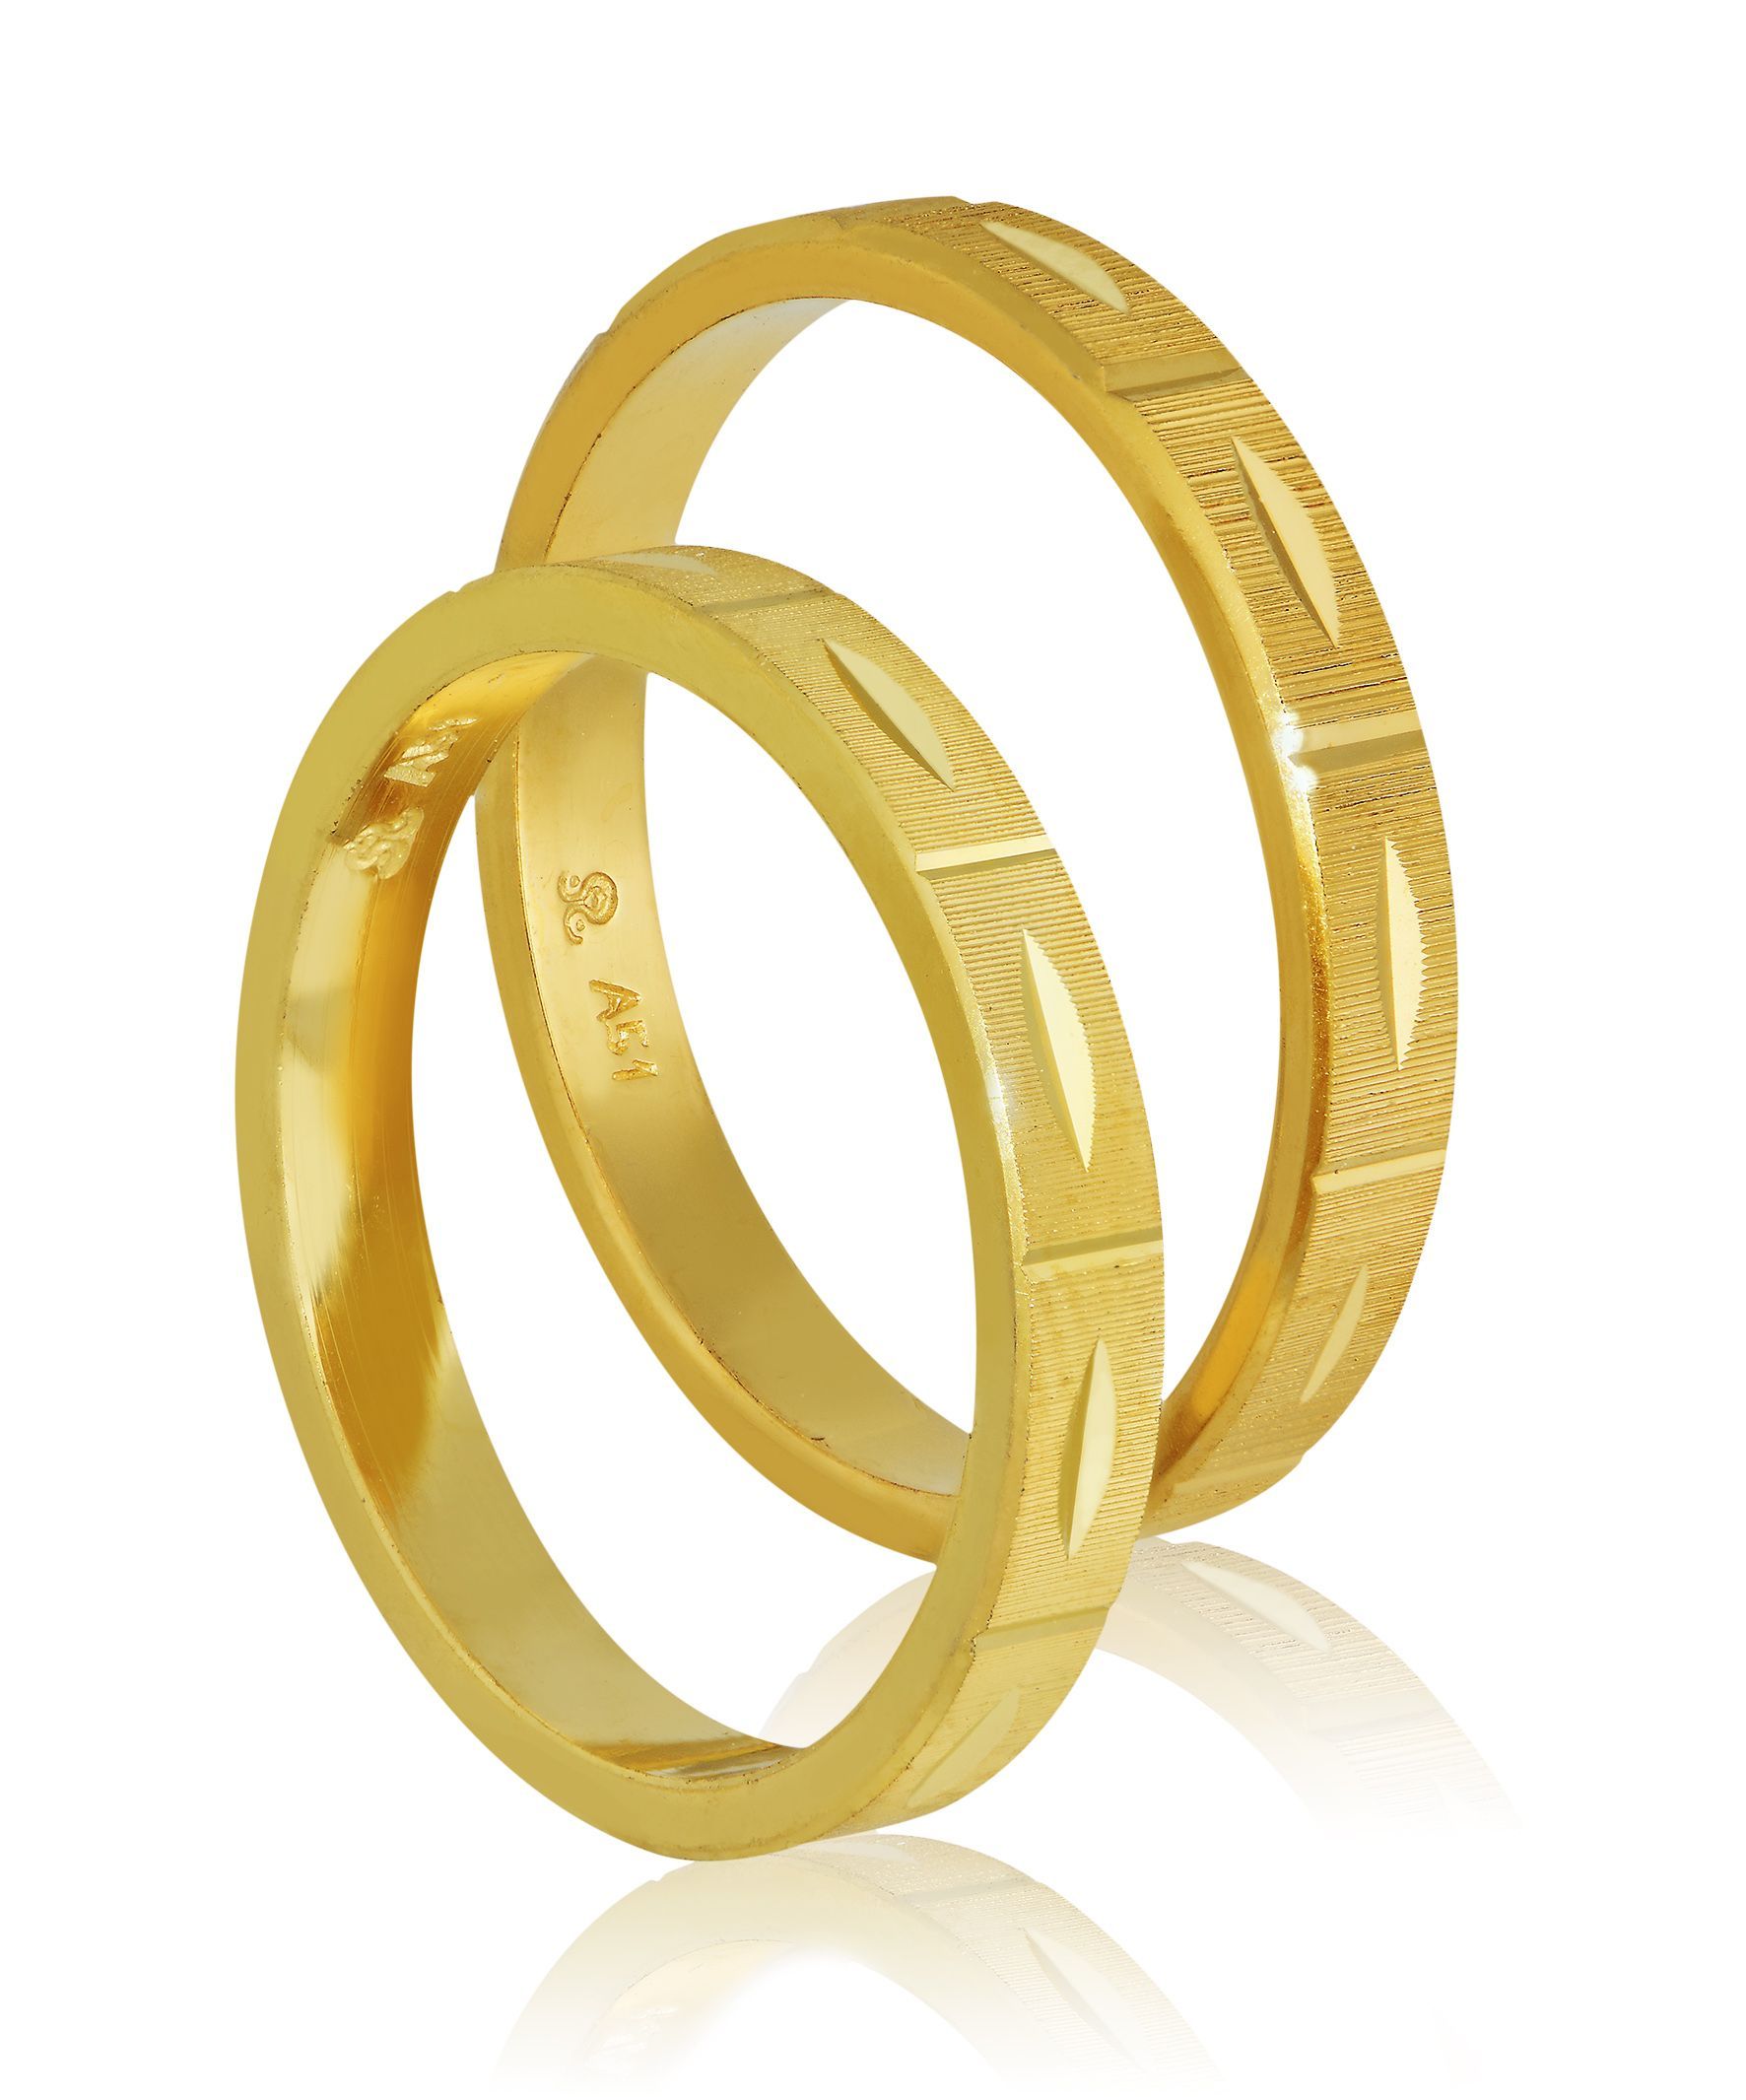 Golden wedding rings 3mm (code 408)